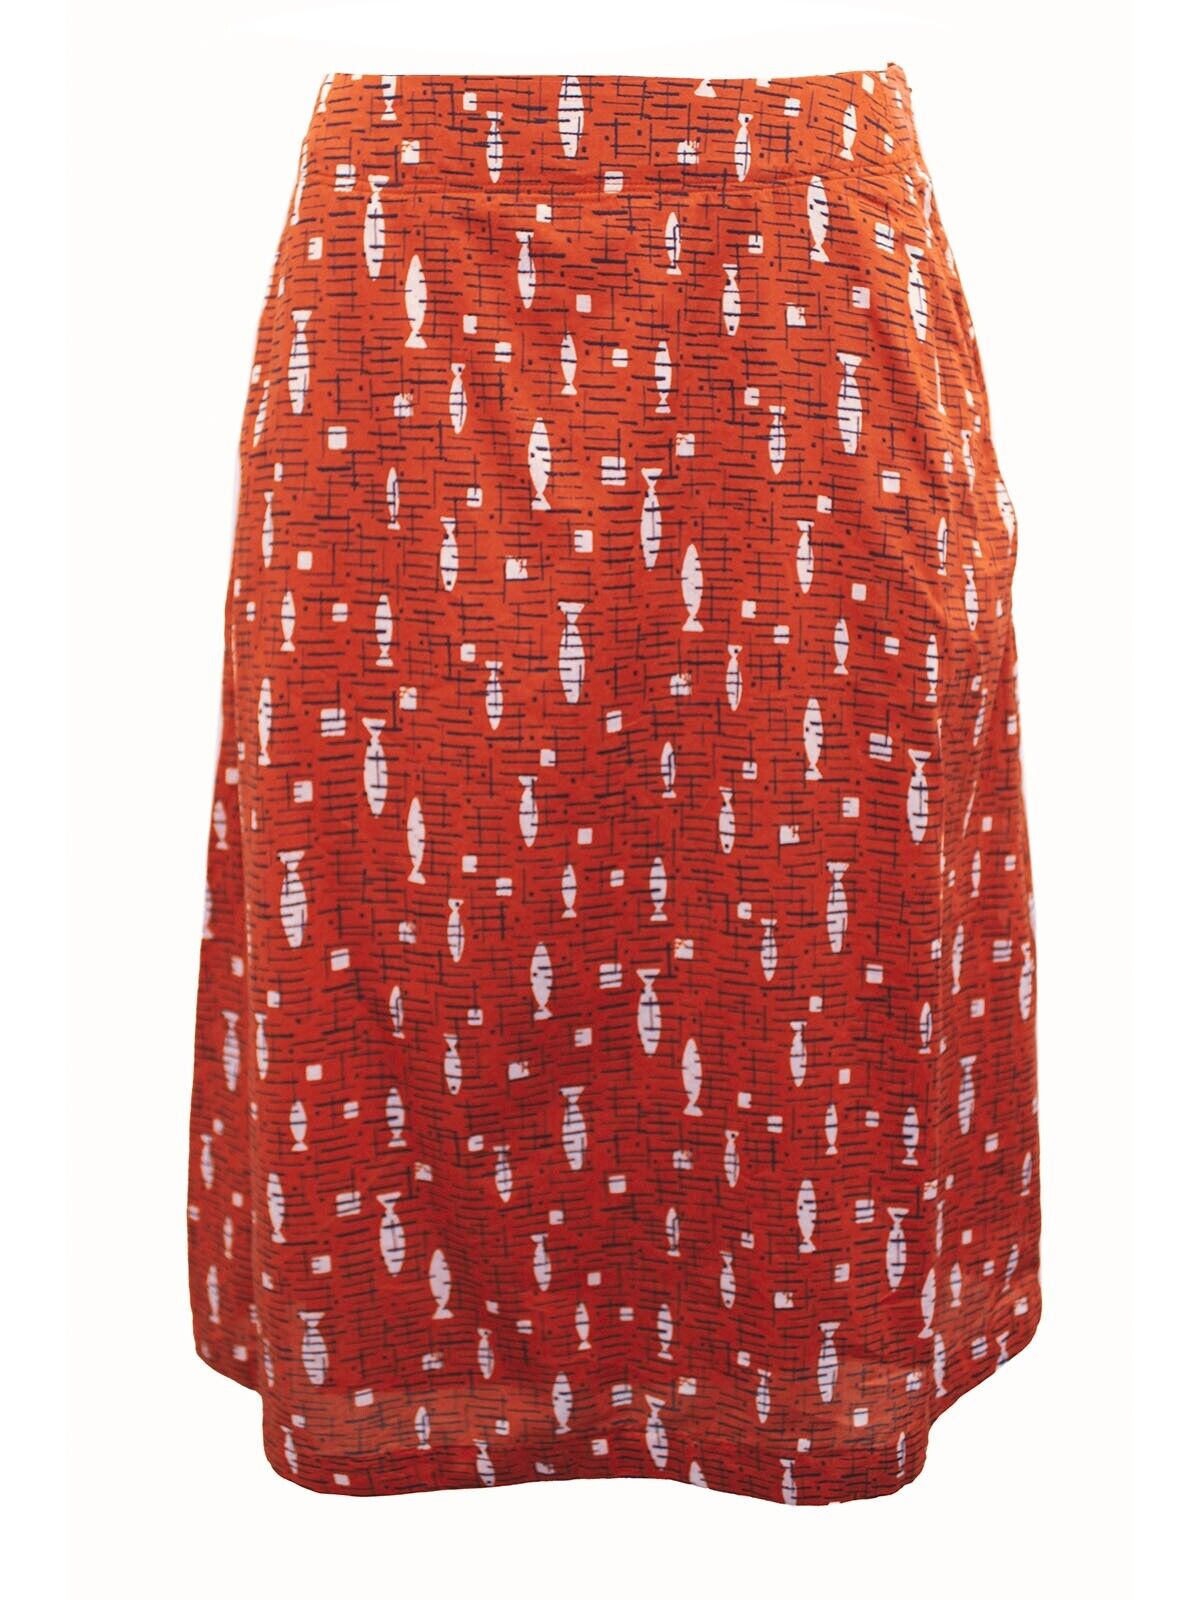 EX Seasalt Brick Red Paint Pot Skirt Size 26/28 see description for measurements